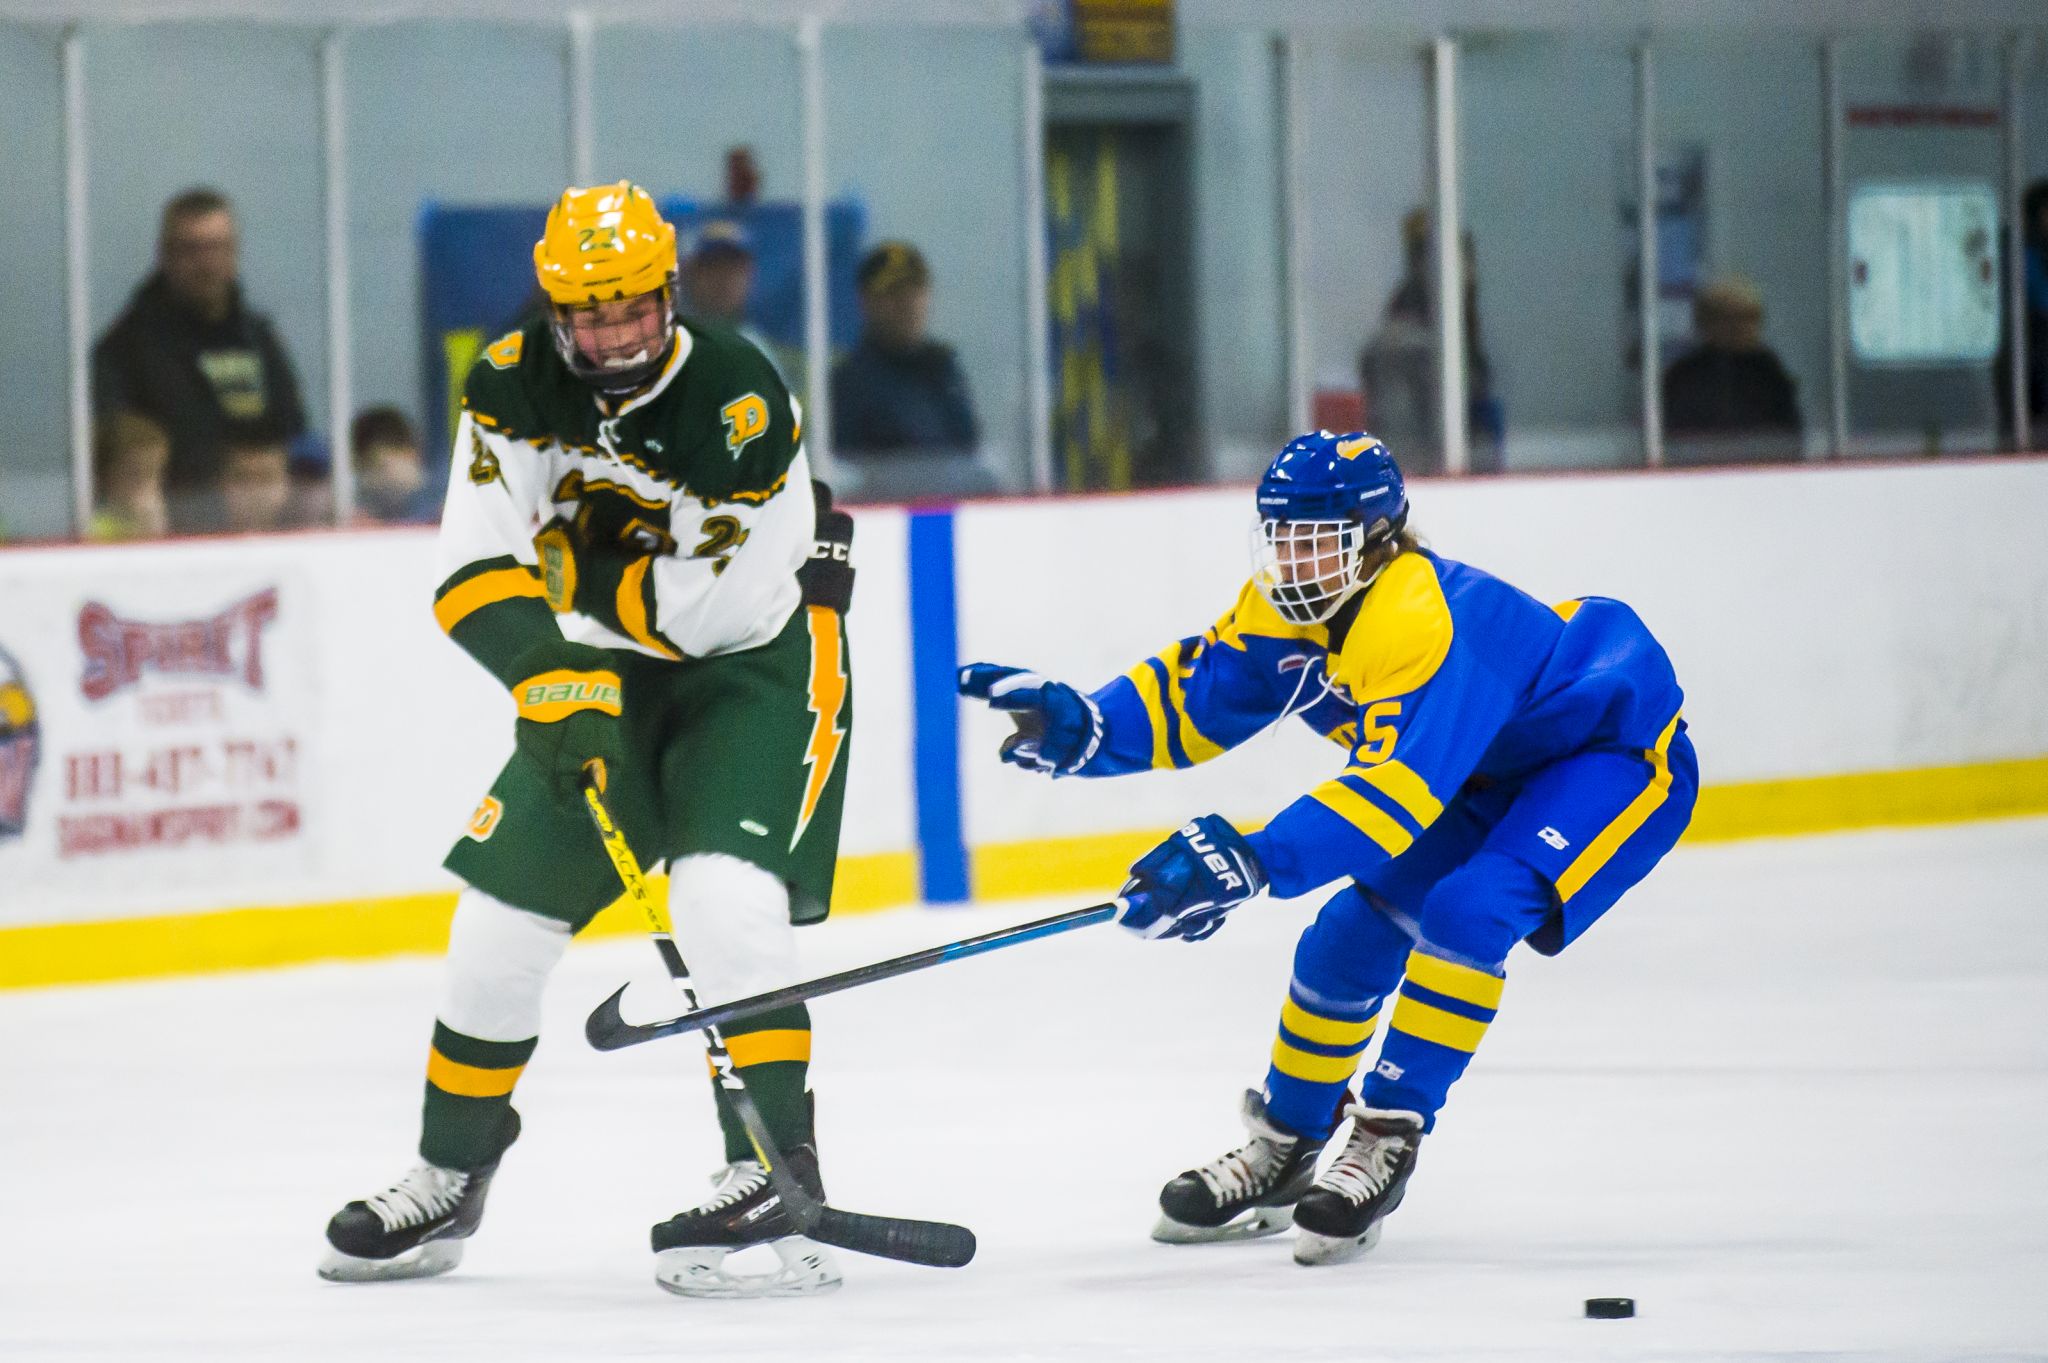 Midland High School vs. H. H. Dow High School hockey - Dec. 4, 2019